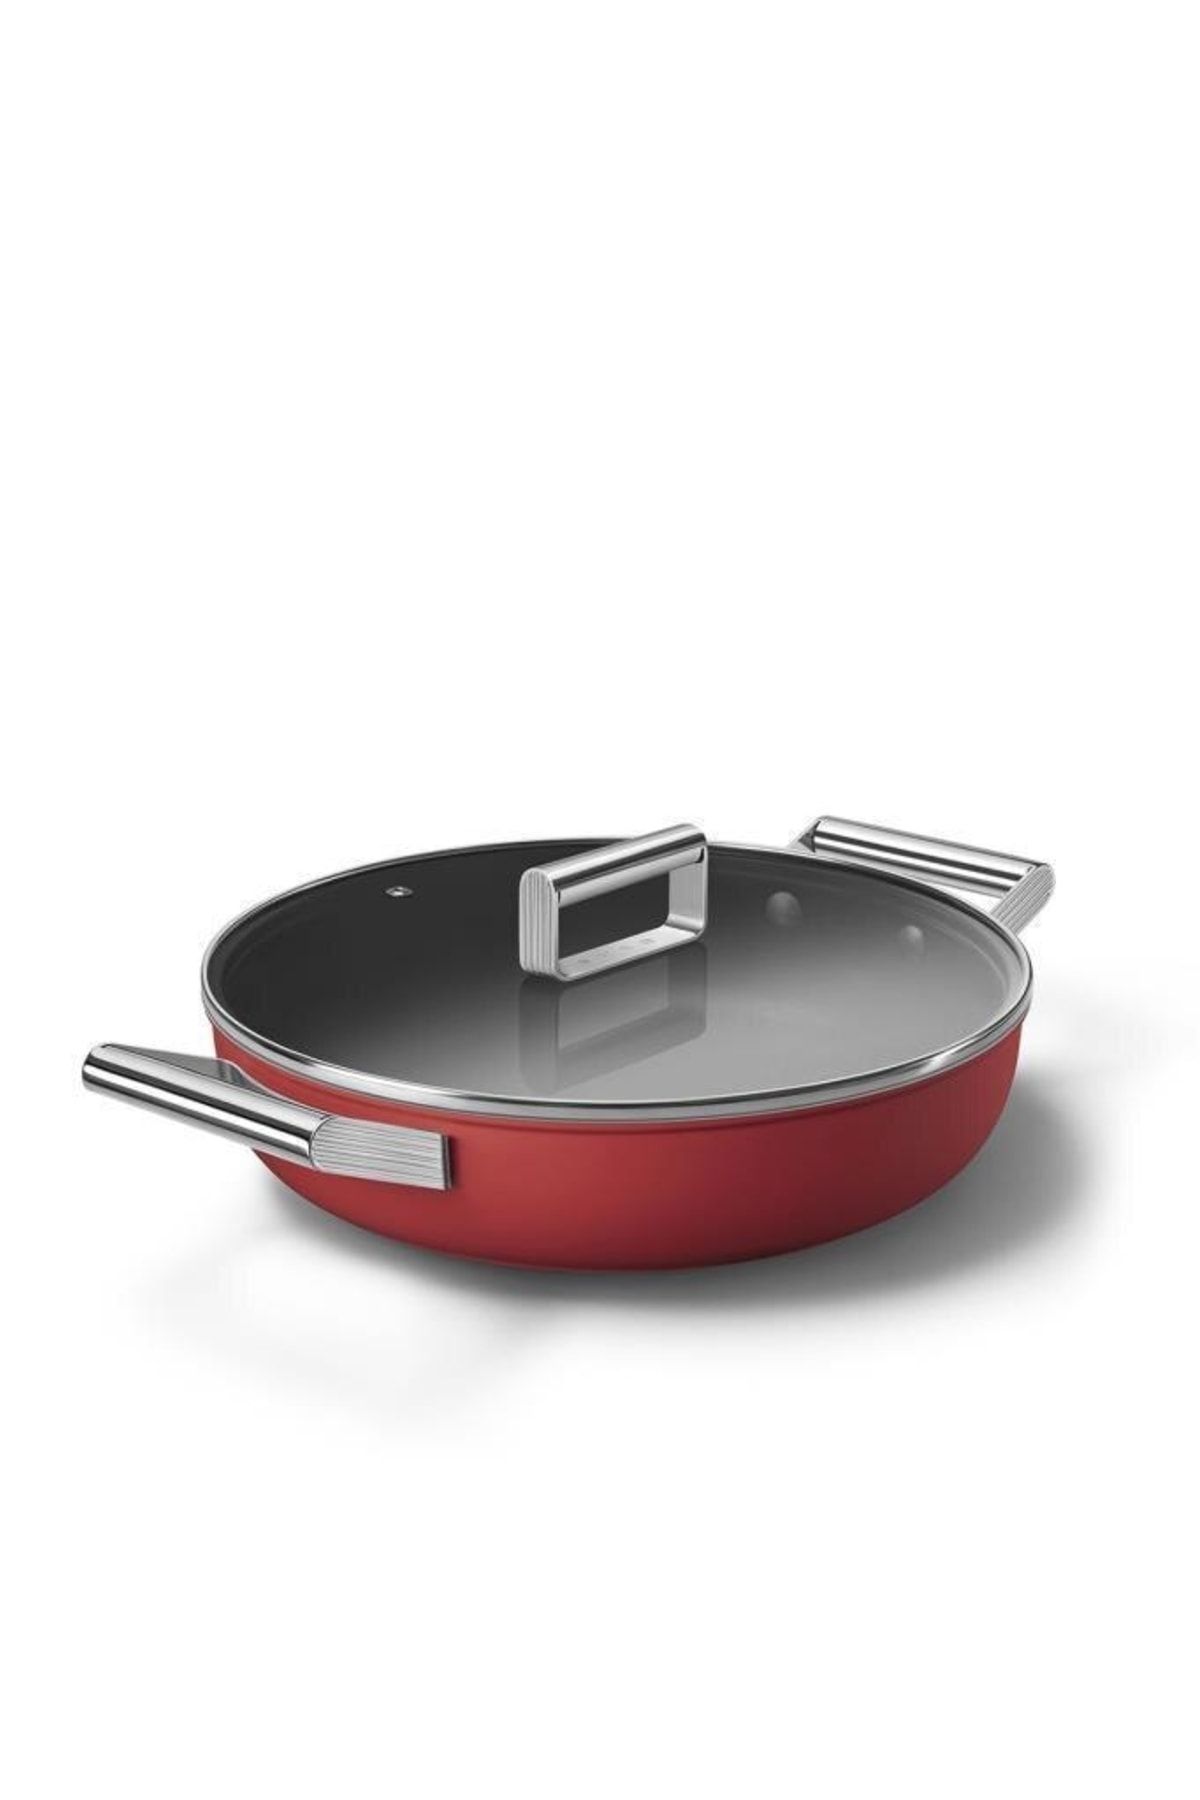 Smeg Cookware 50's Style Cam Kapaklı 28 Cm Pilav Tenceresi Kırmızı